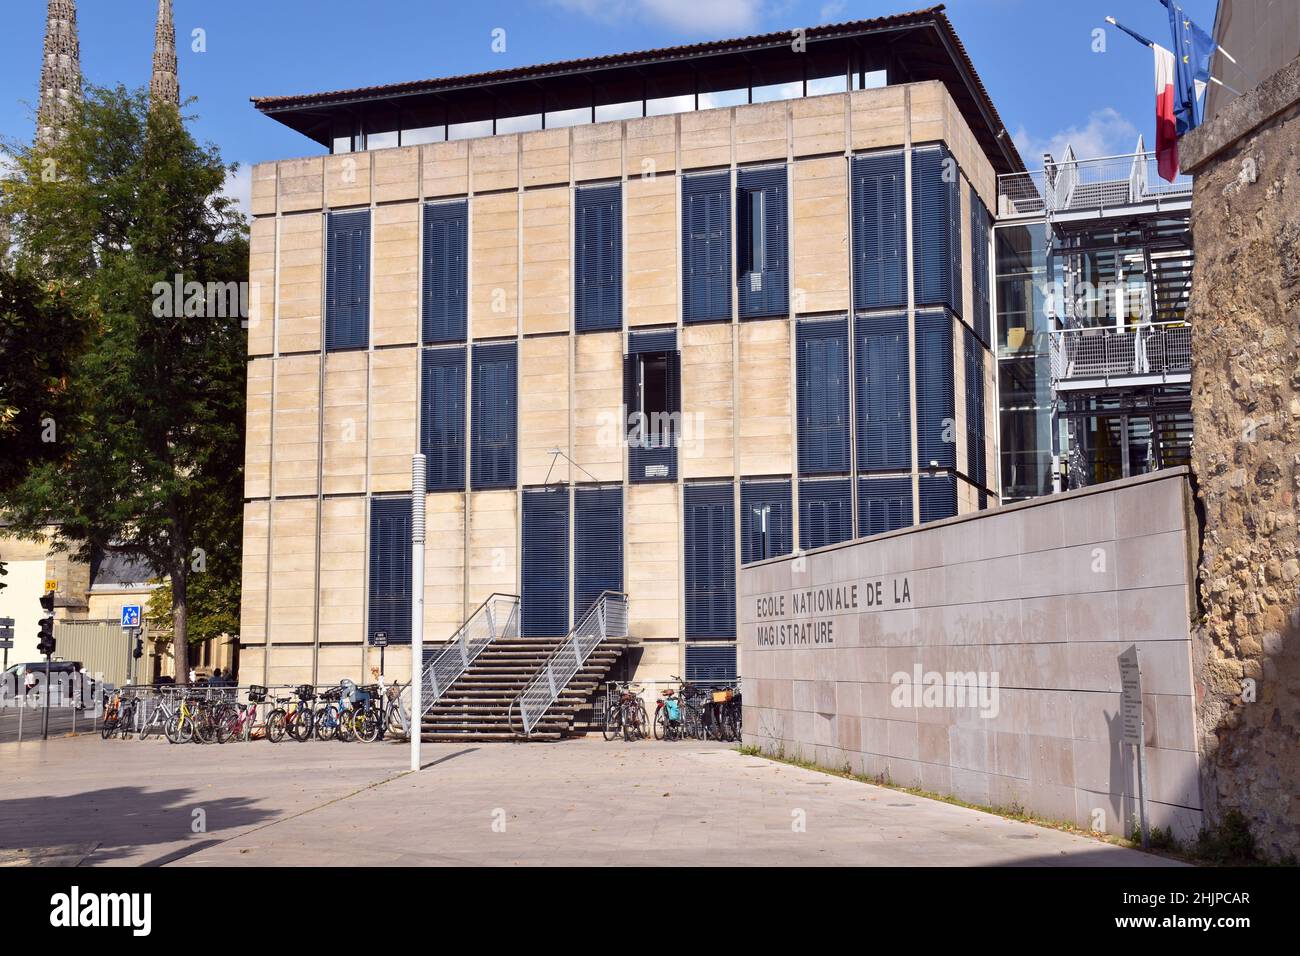 L’École nationale de la magistrature, die französische Nationalschule für Justiz, ein Beispiel für rationale Architektur, die subtil in die Stadt eingefügt wurde Stockfoto